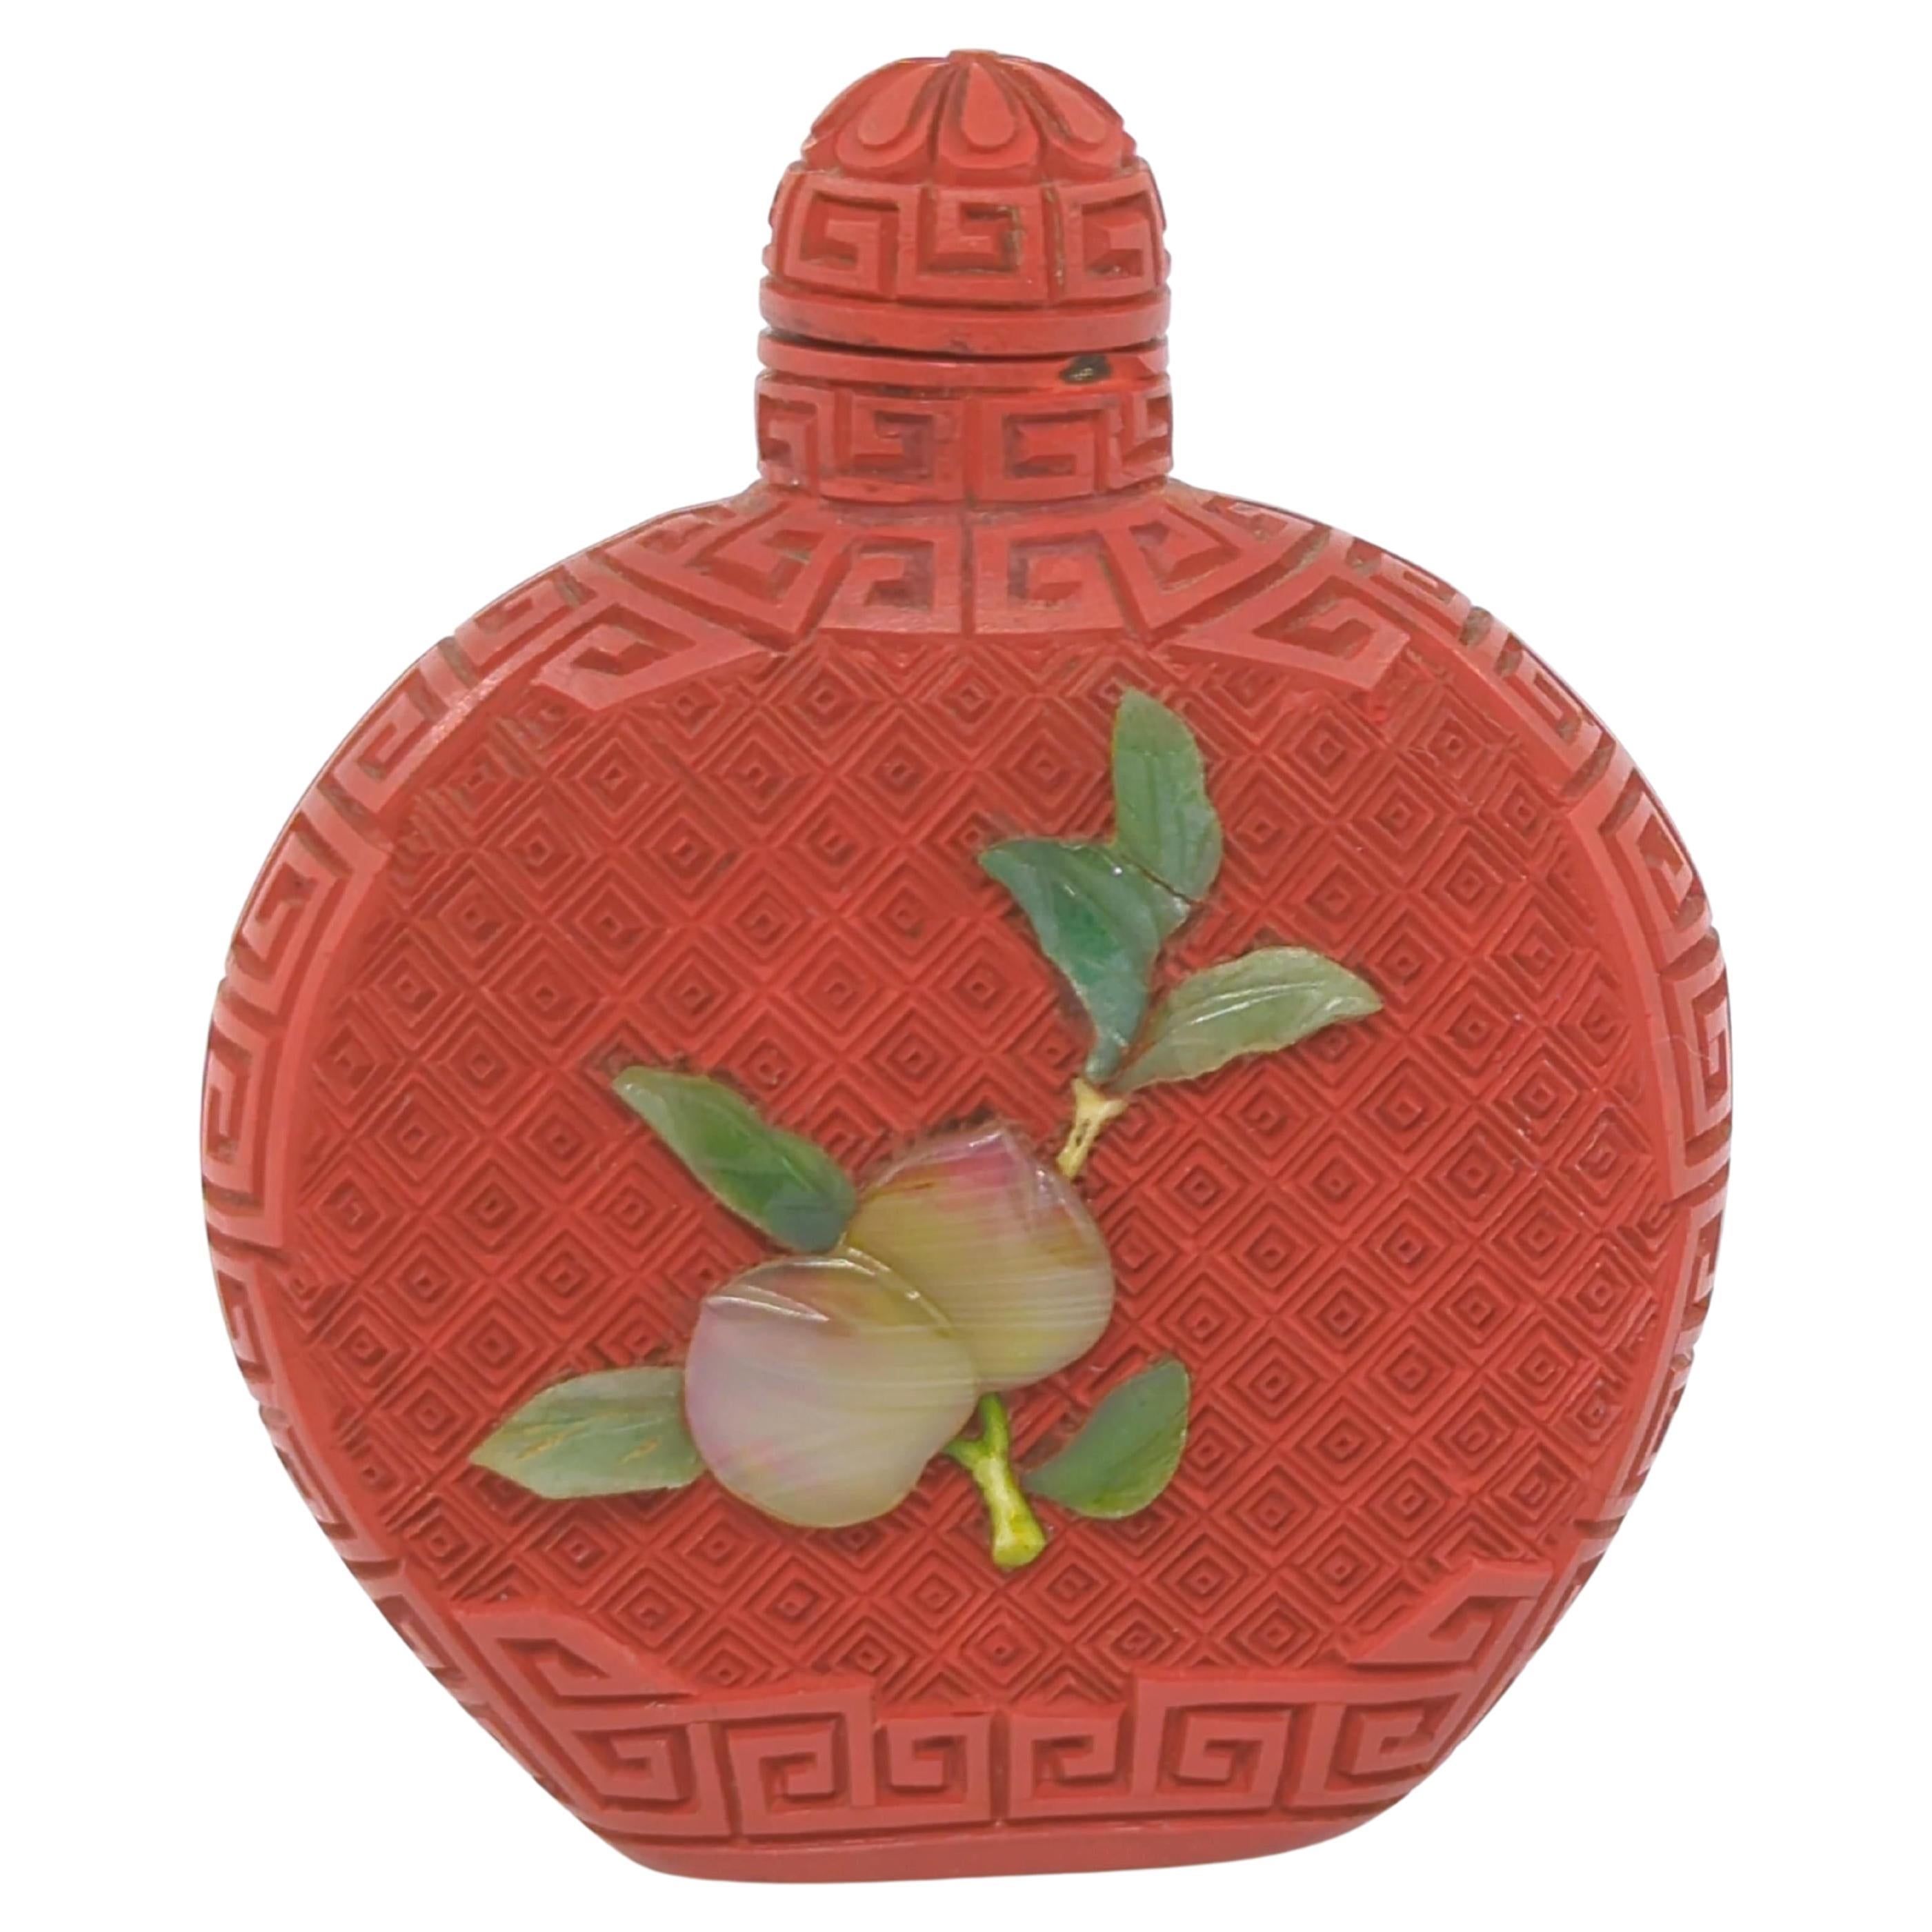 Diese Zinnober-Schnupftabakflasche aus der Zeit der Republik China ist eine meisterhafte Mischung aus komplizierter Handwerkskunst und symbolischer Kunstfertigkeit. Die abgeflachte, kugelförmige Flasche dient als Leinwand für eine sorgfältig